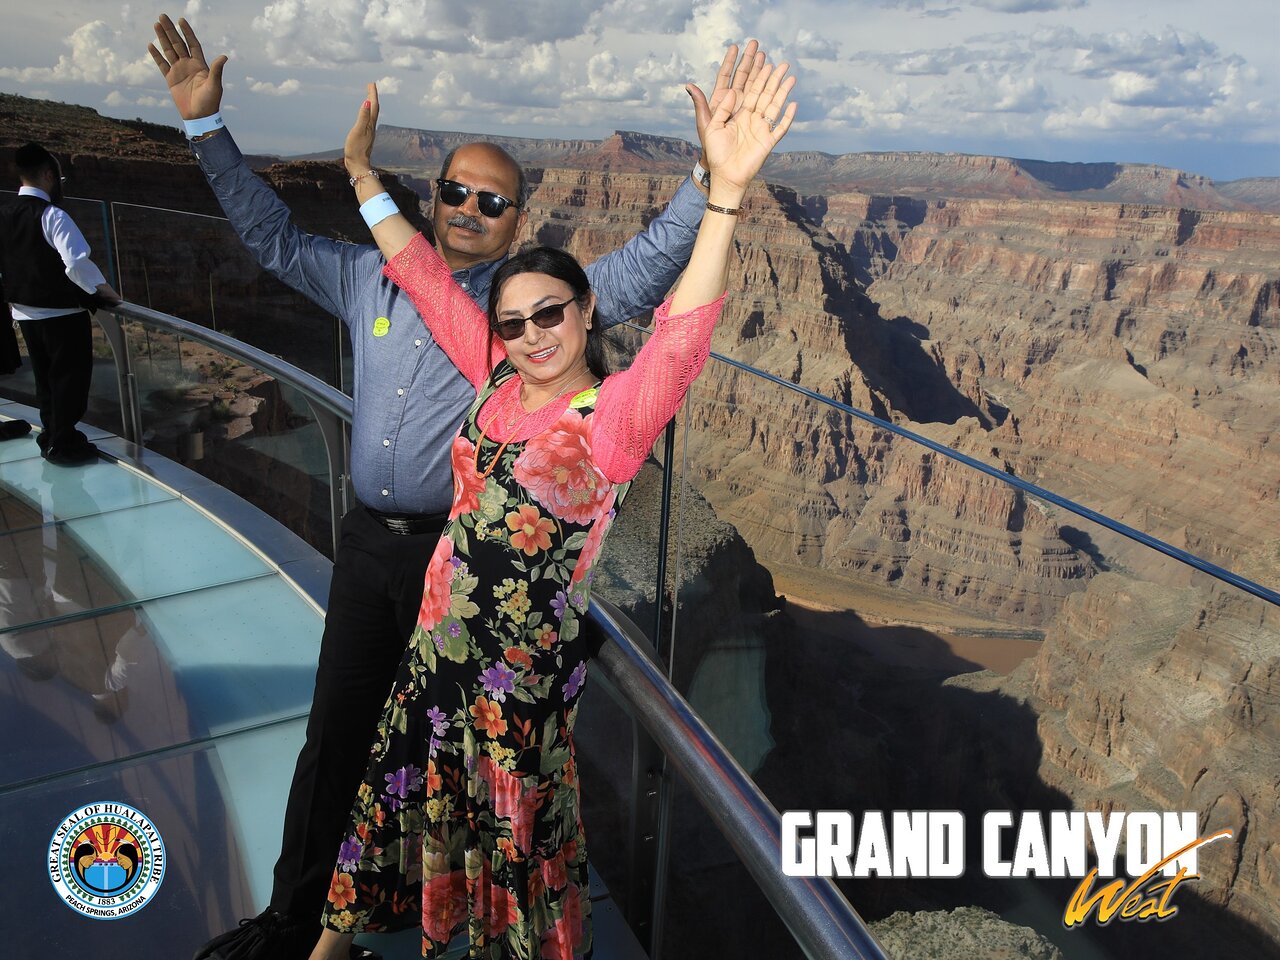 Le meilleur du plateau ouest : visite aérienne du Grand Canyon avec possibilité de survol en hélicoptère, promenade en bateau et accès à la passerelle Skywalk